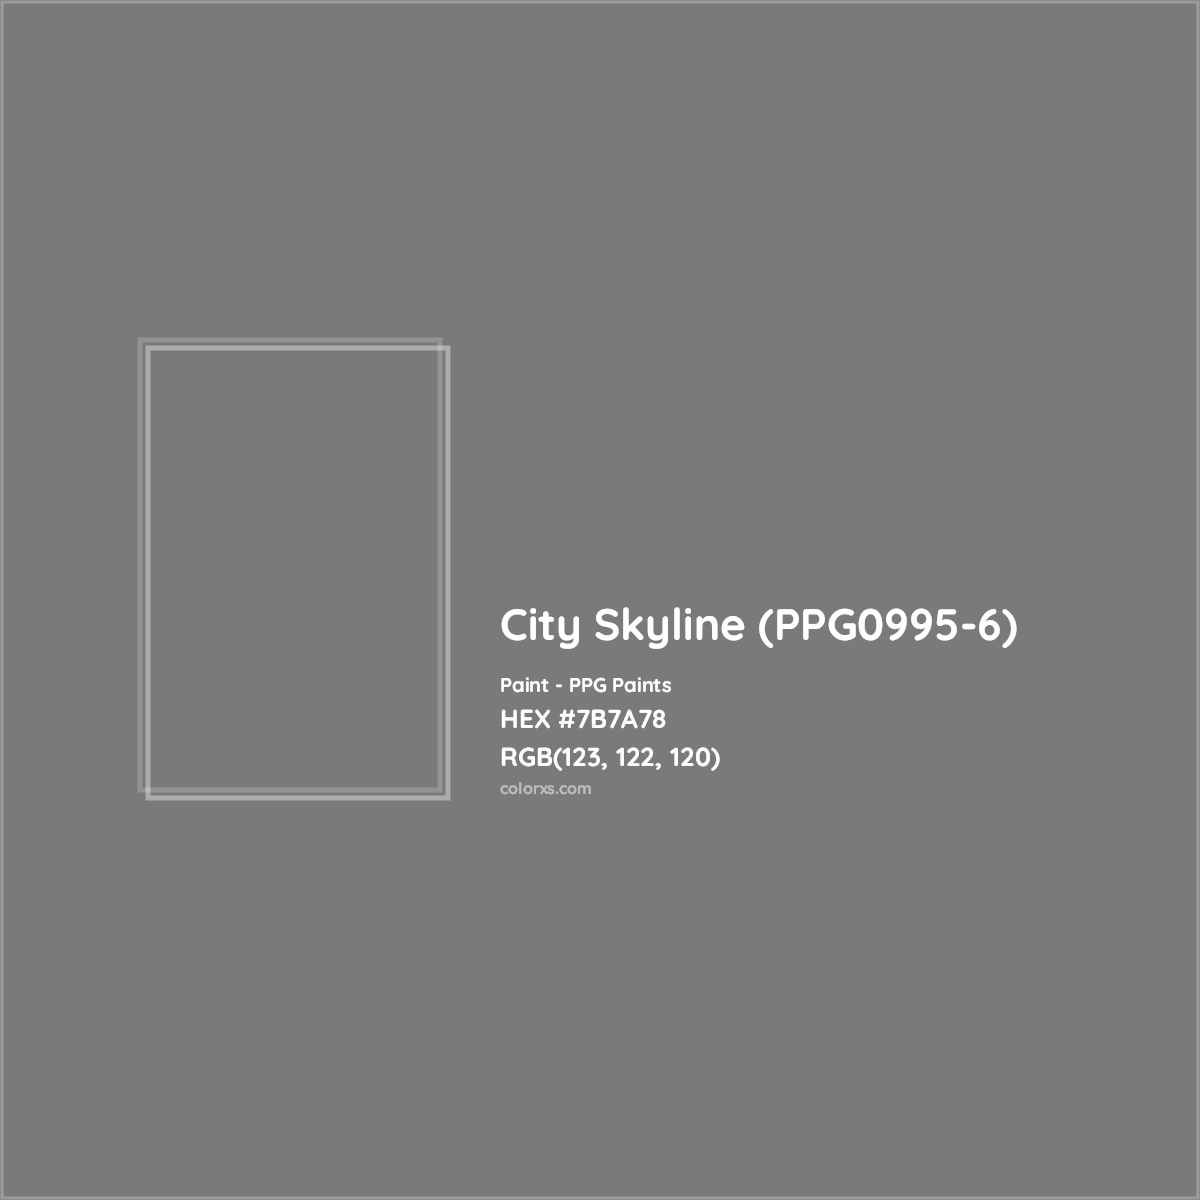 HEX #7B7A78 City Skyline (PPG0995-6) Paint PPG Paints - Color Code